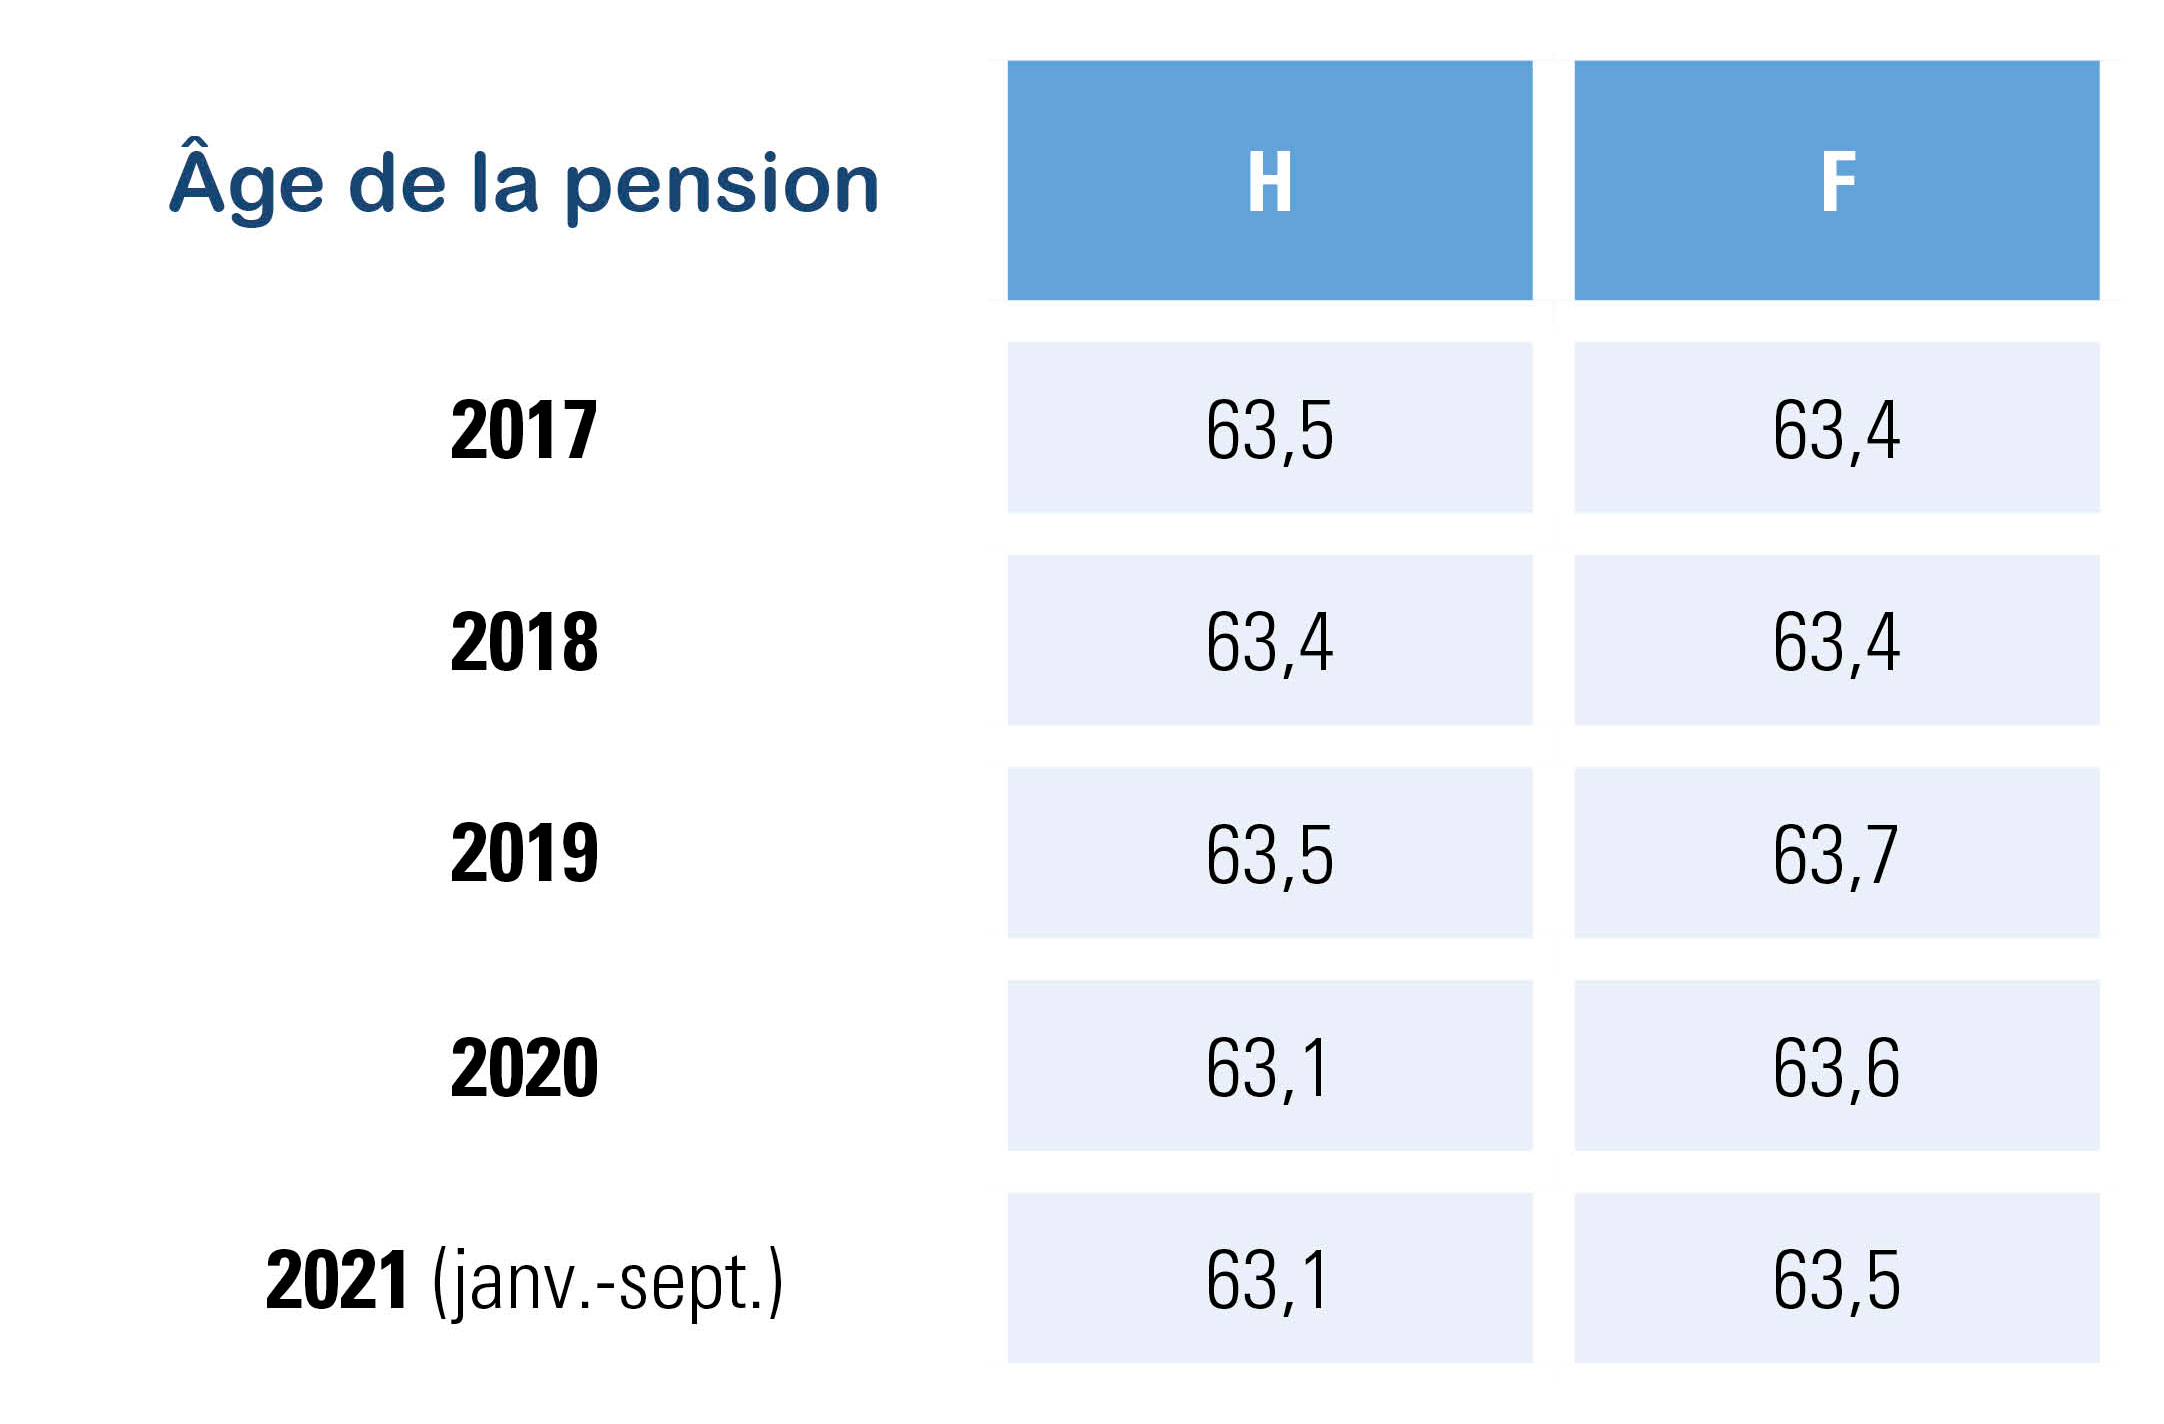 âge moyen effectif de la pension des travailleurs belges ces 5 dernières années – H et F